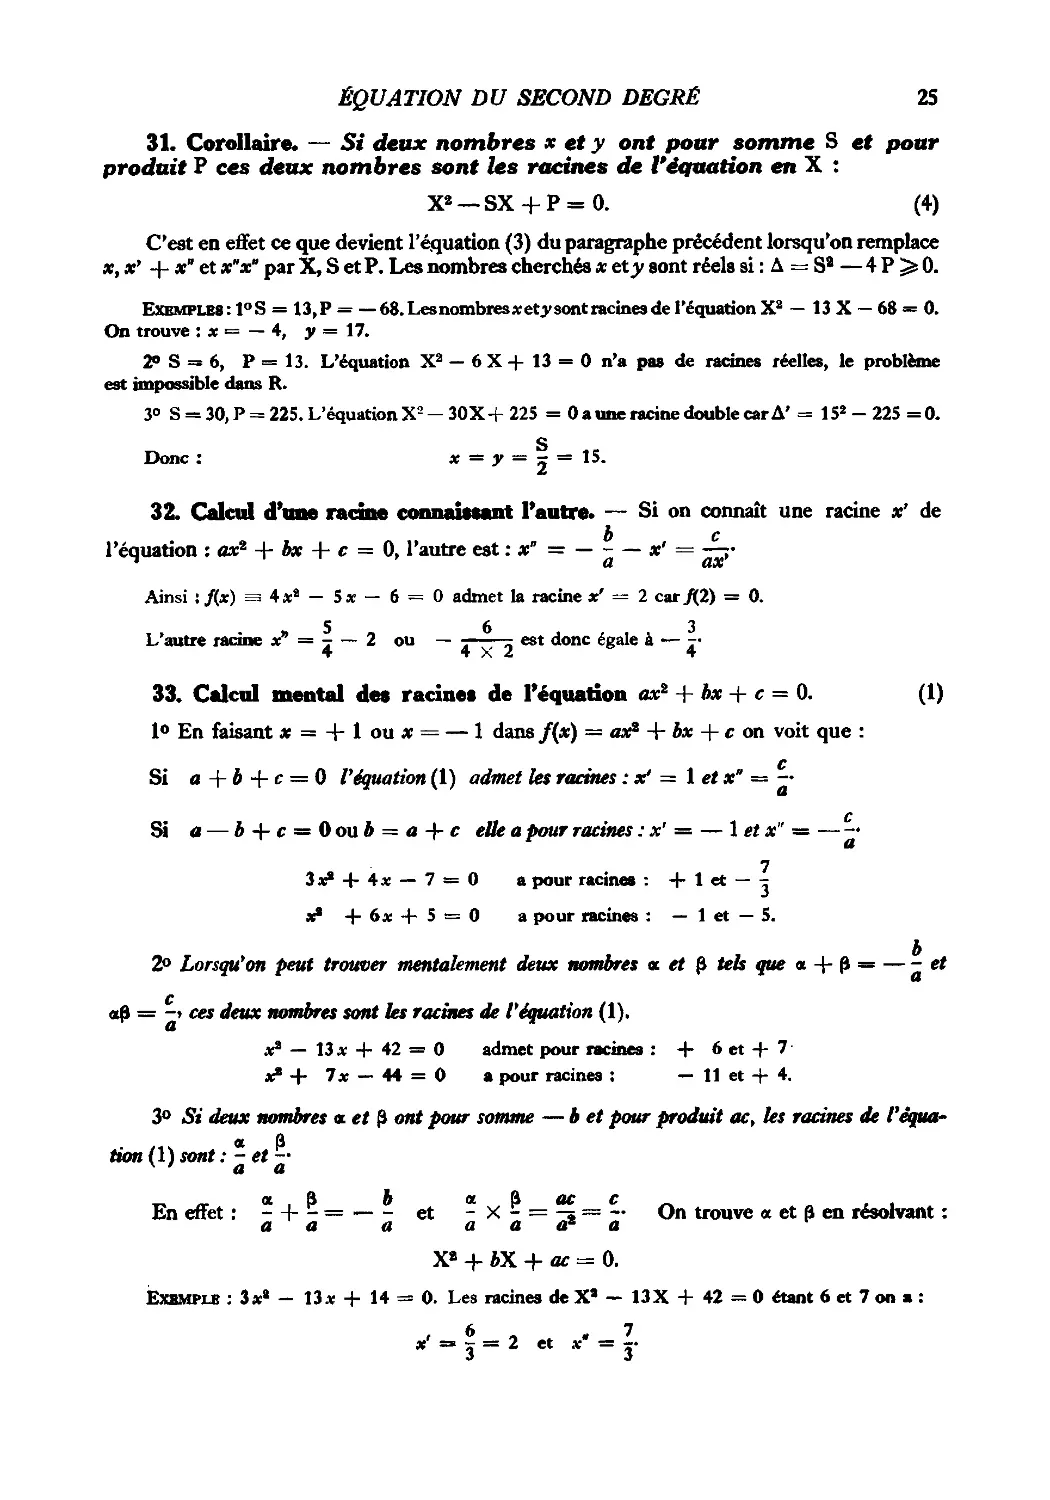 31. Corollaire
32. Calcul d’une racine connaissant l’autre
33. Calcul mental des racines de l’équation ax² + bx + c = 0